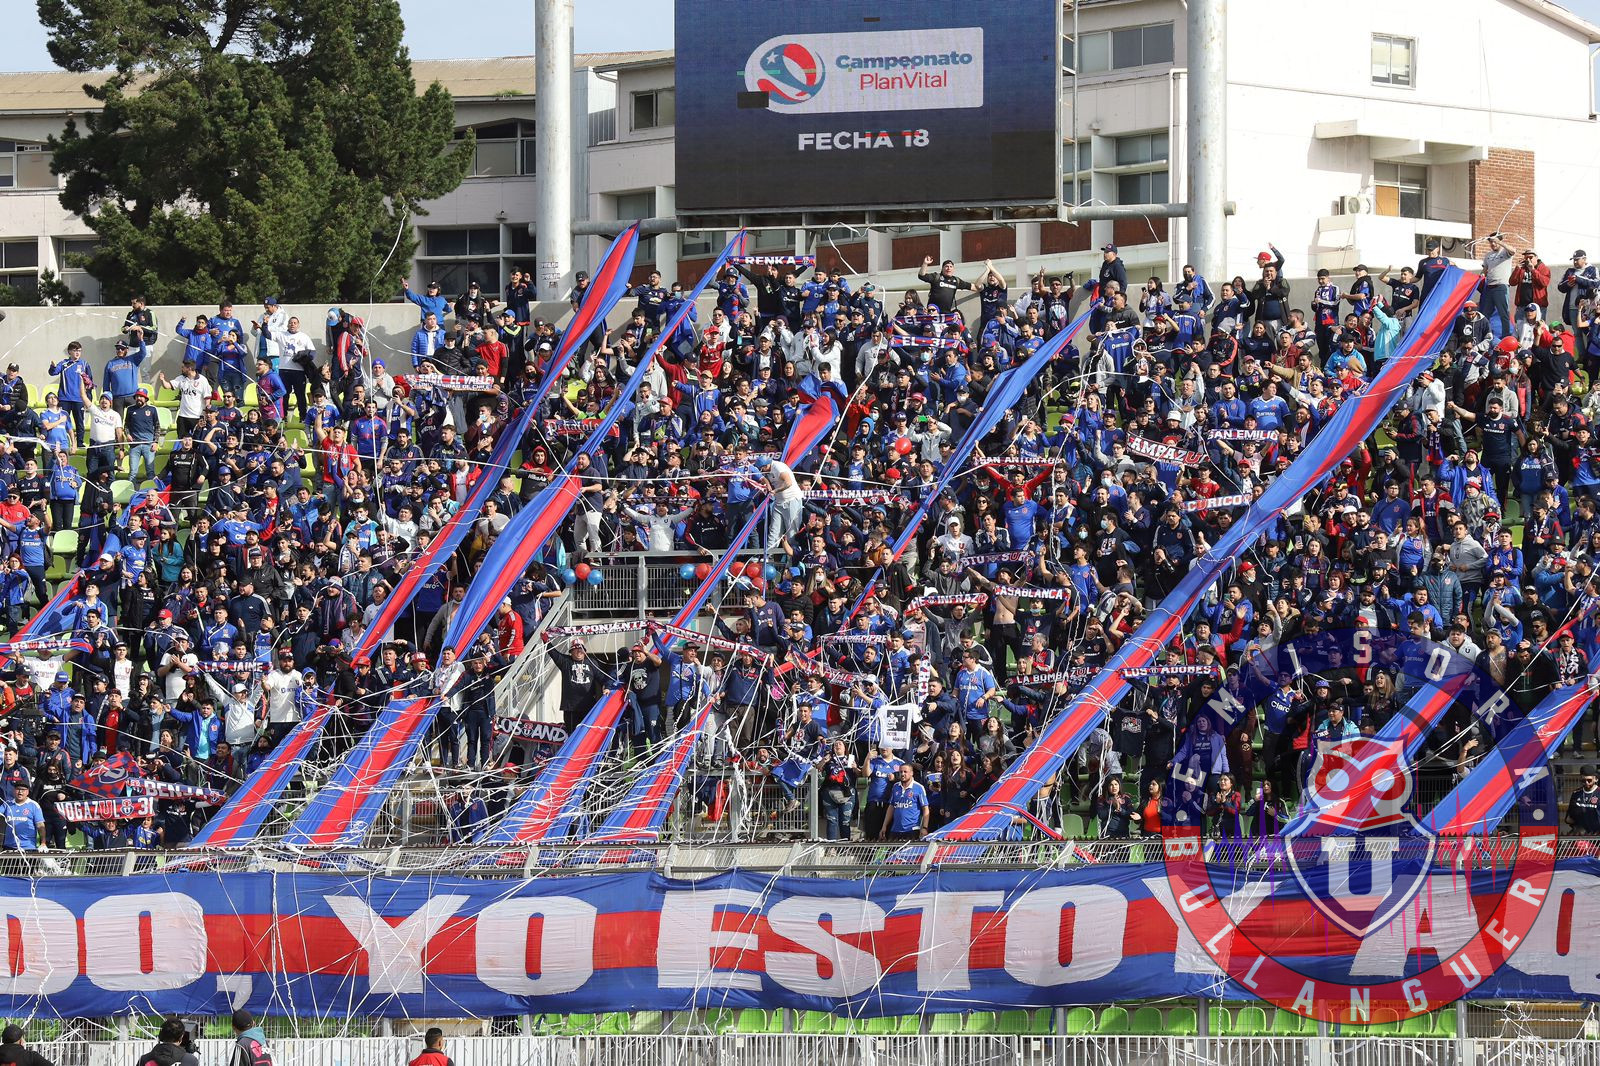 7 mil azules en el puerto: Hoy abre el canje para las entradas del partido versus Coquimbo Unido en Valparaíso